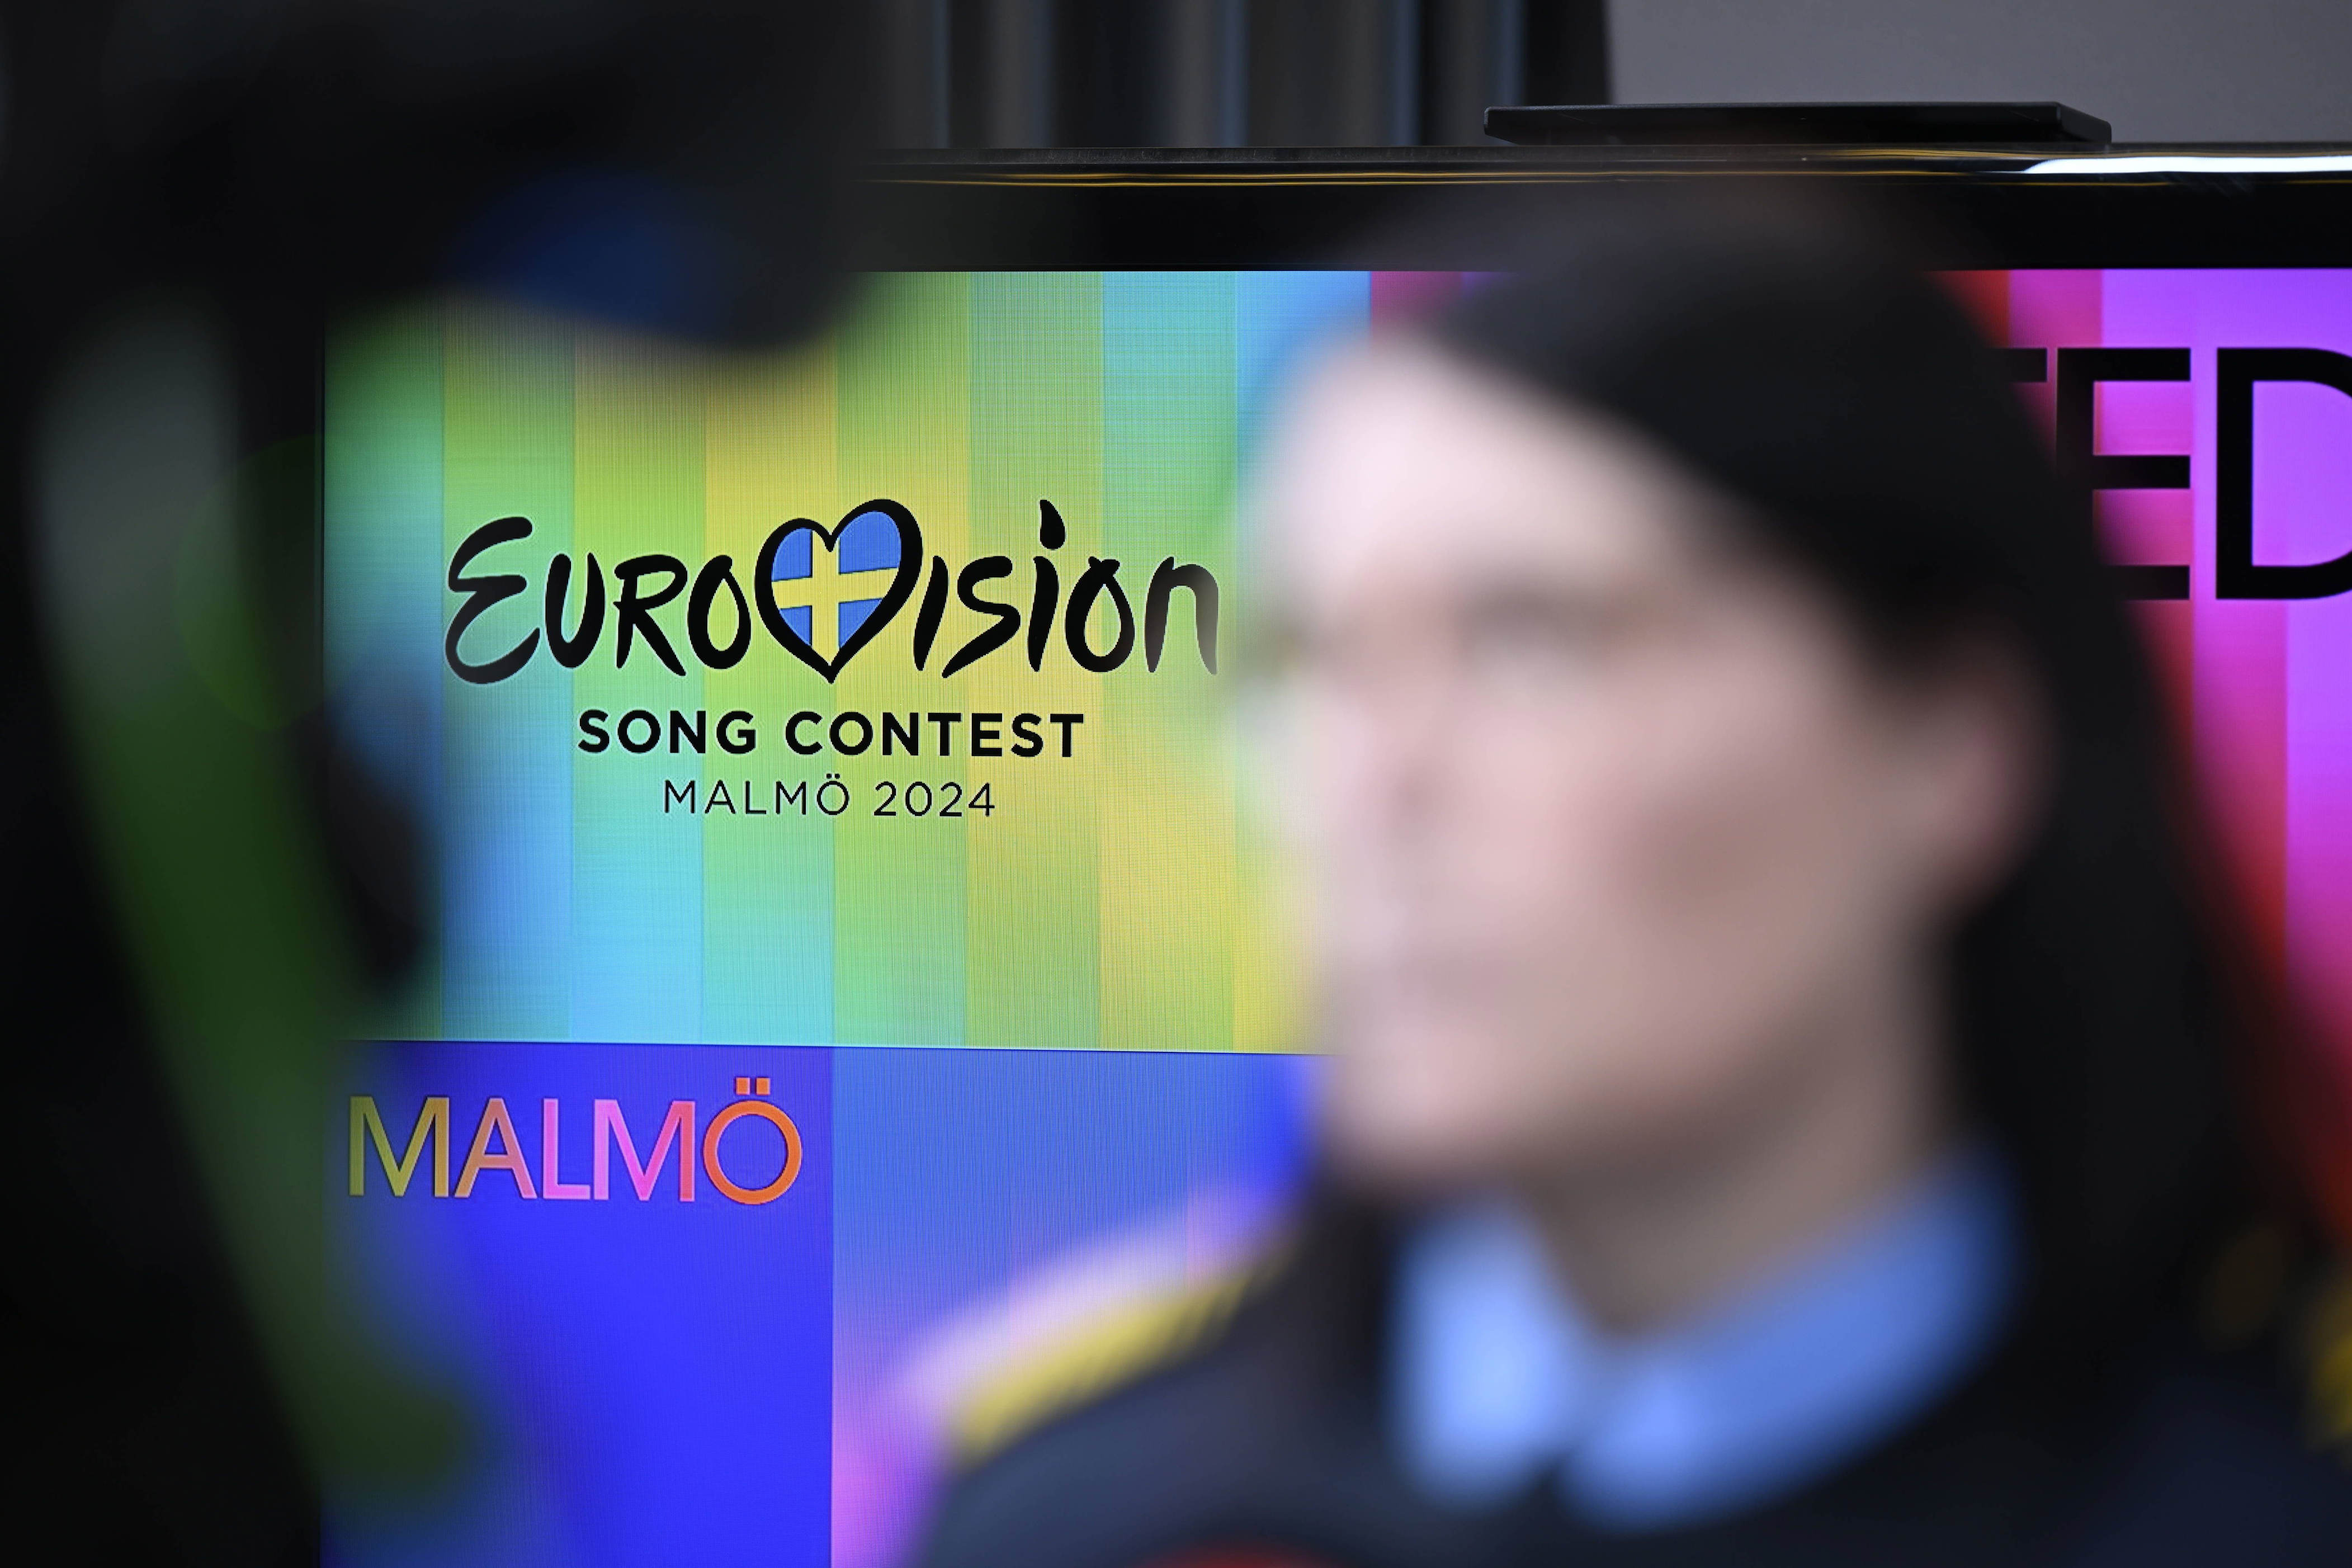 der eurovision song contest in malmö ist ein albtraum für die sicherheitskräfte